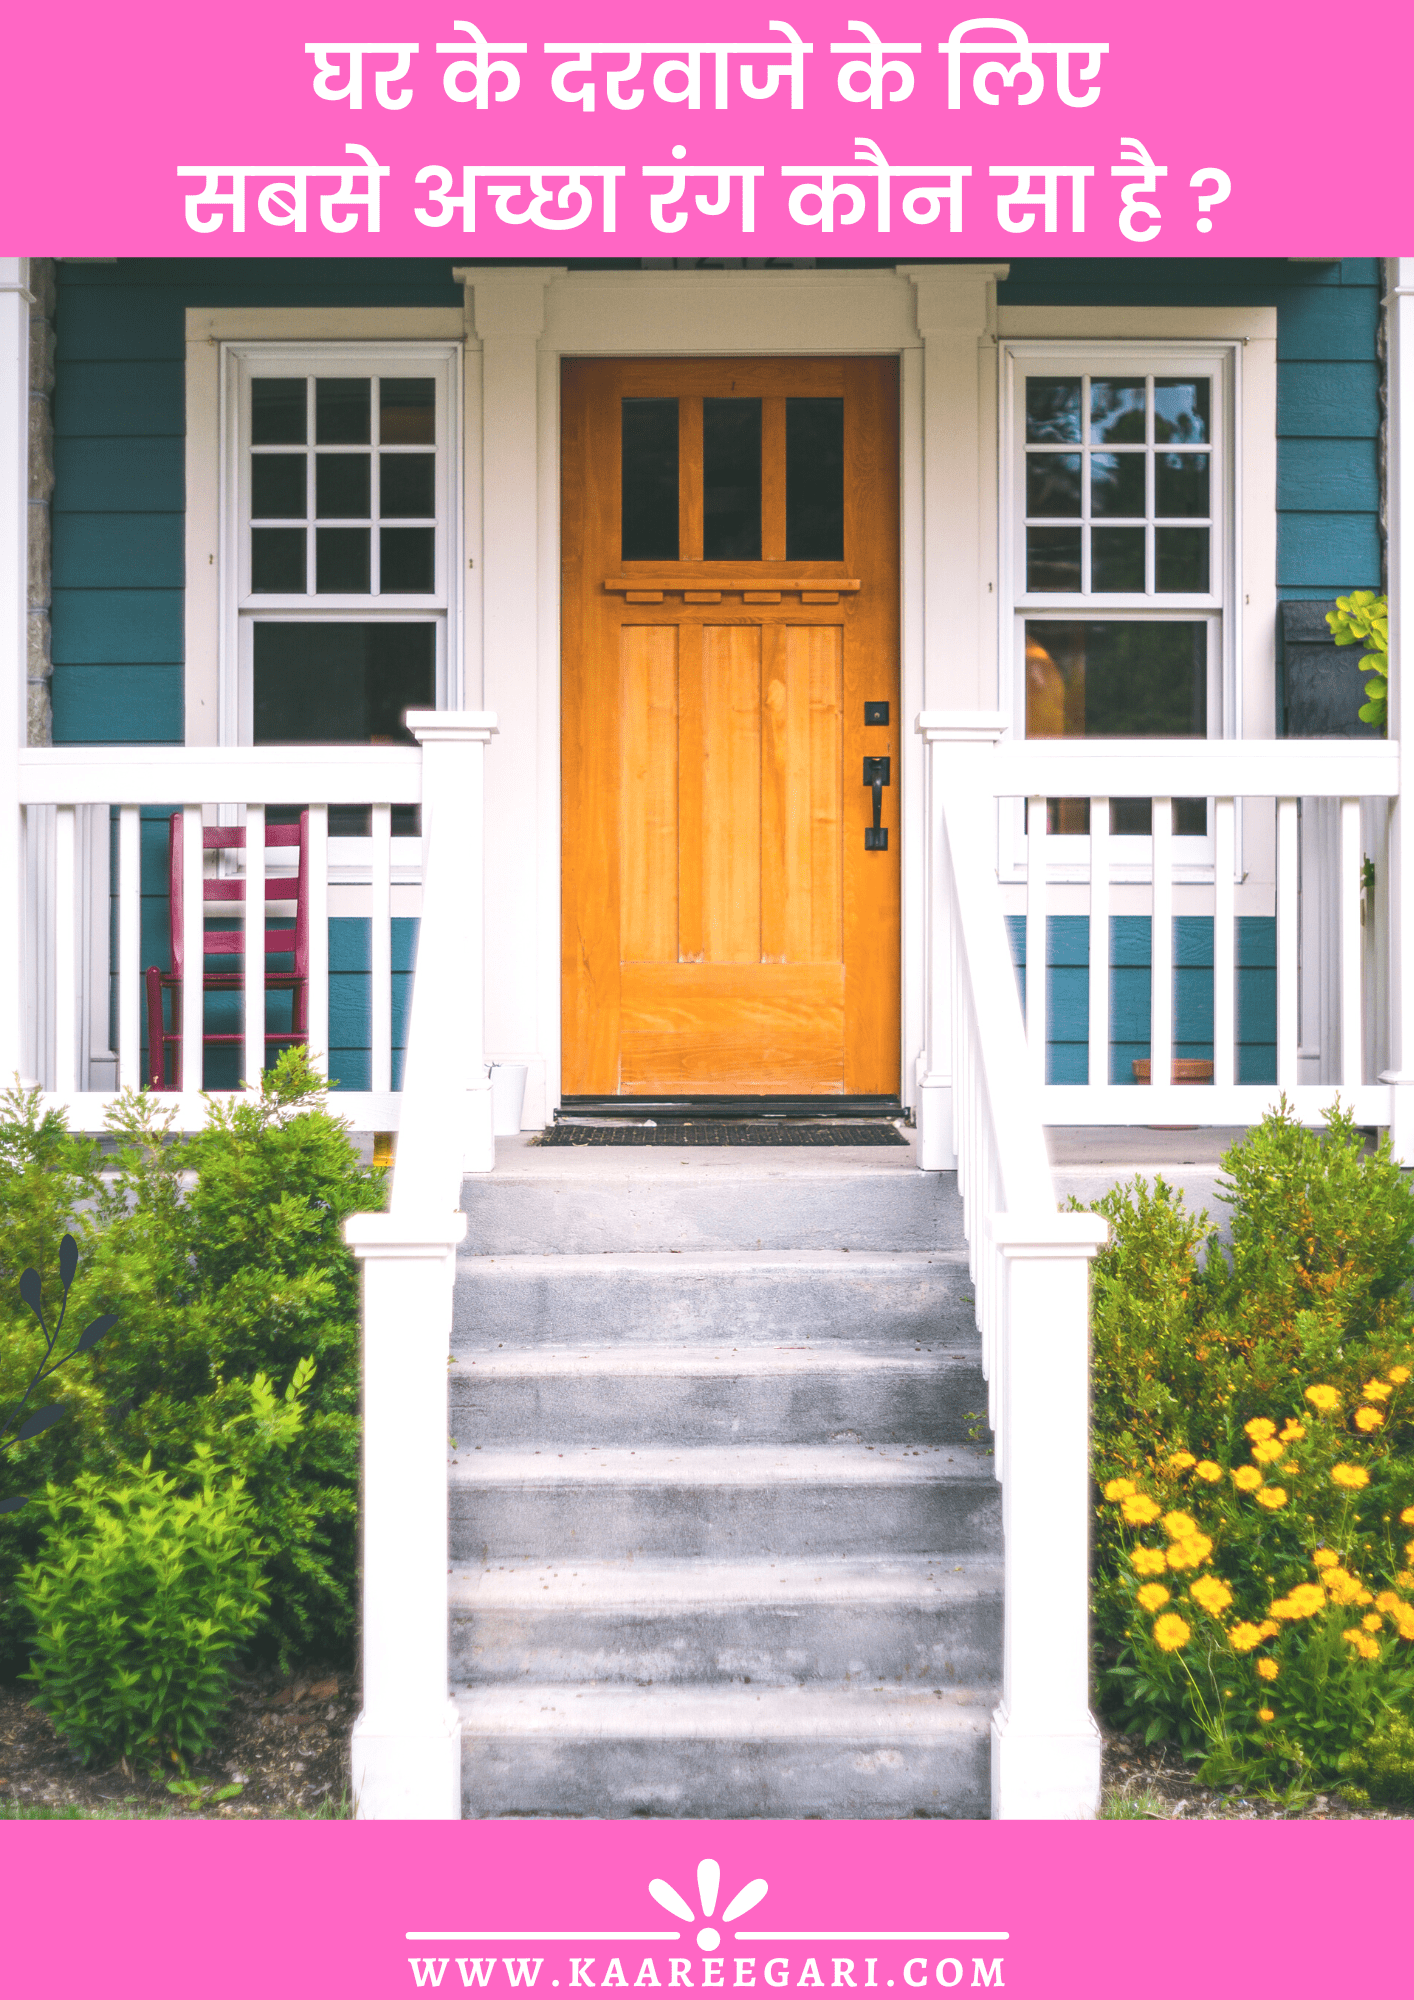 घर के दरवाजे के लिए सबसे अच्छा रंग